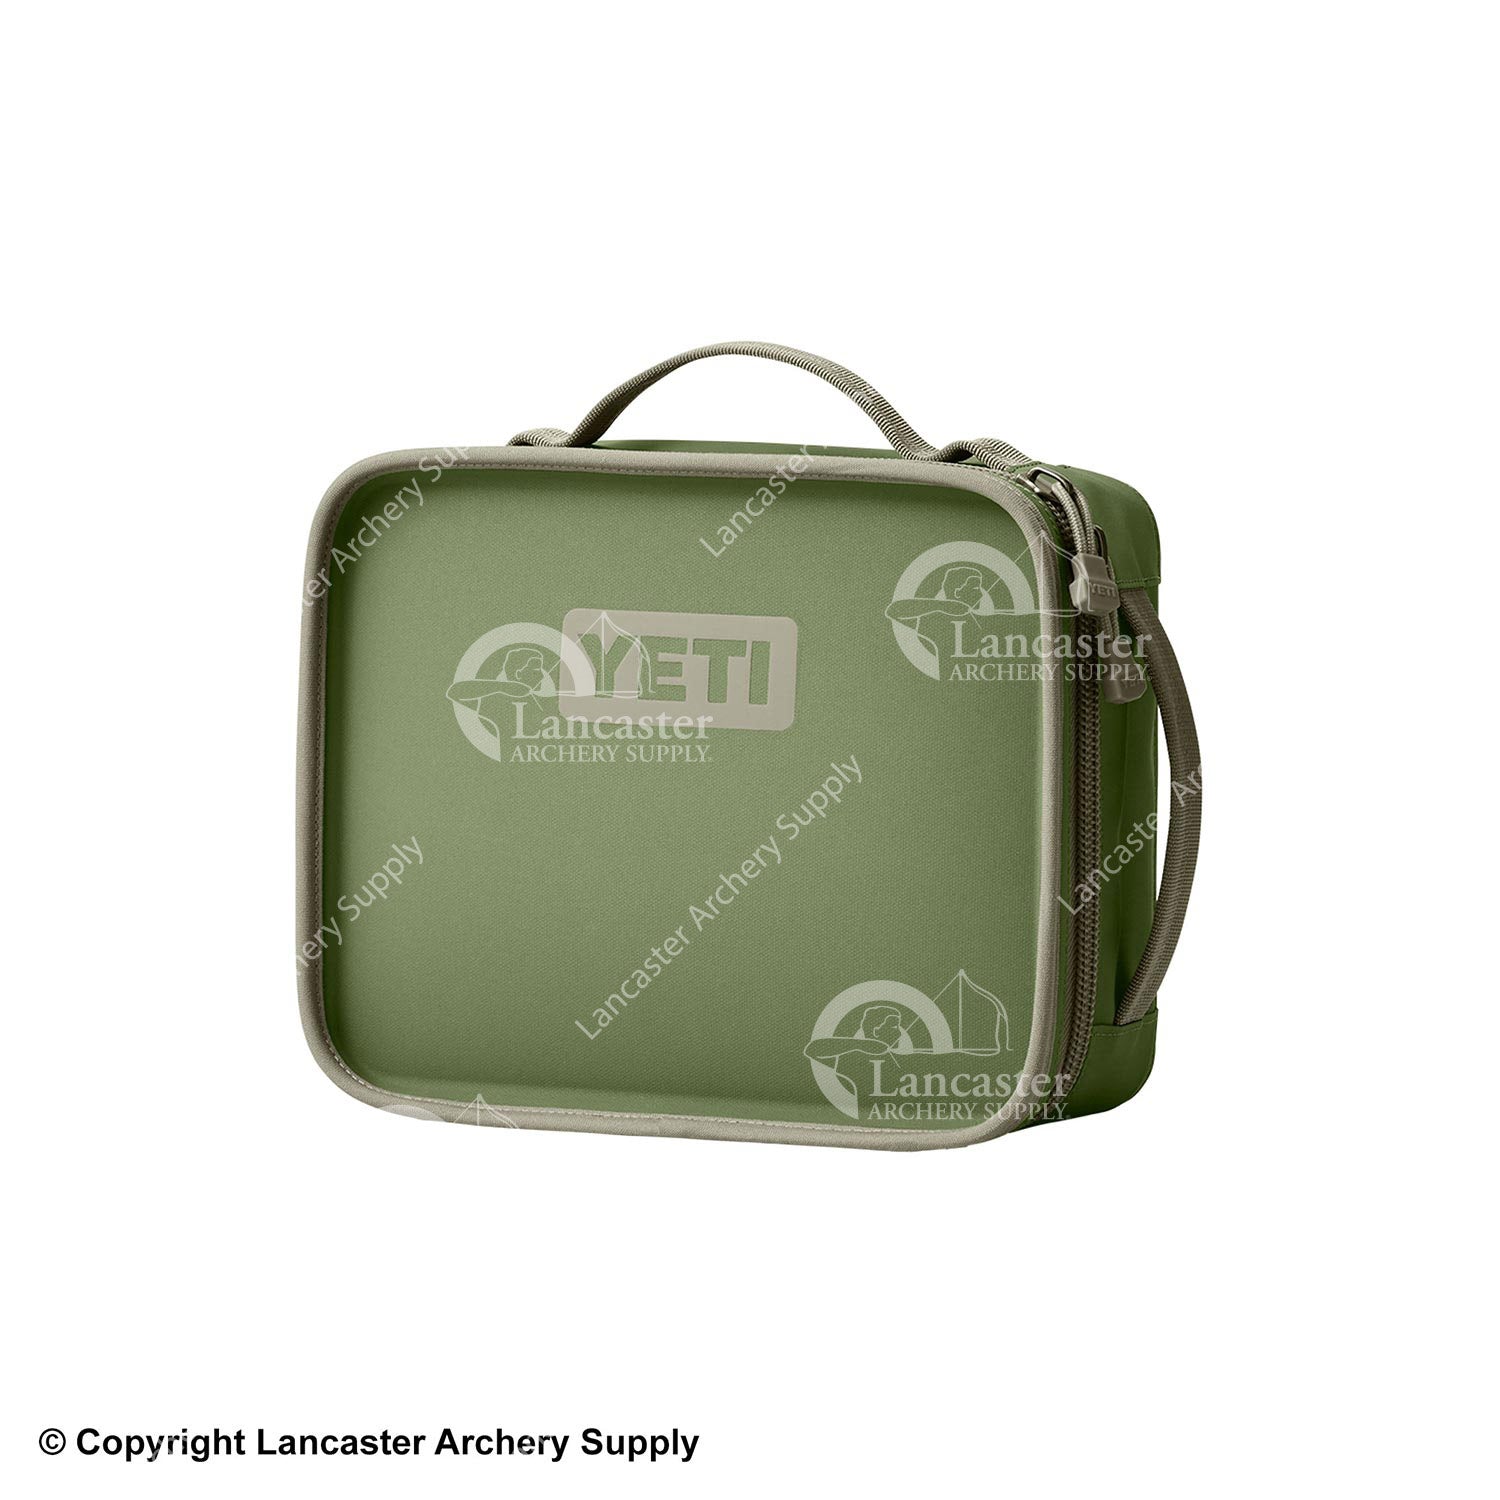 YETI Daytrip Lunch Box (Limited Edition Highland Olive)